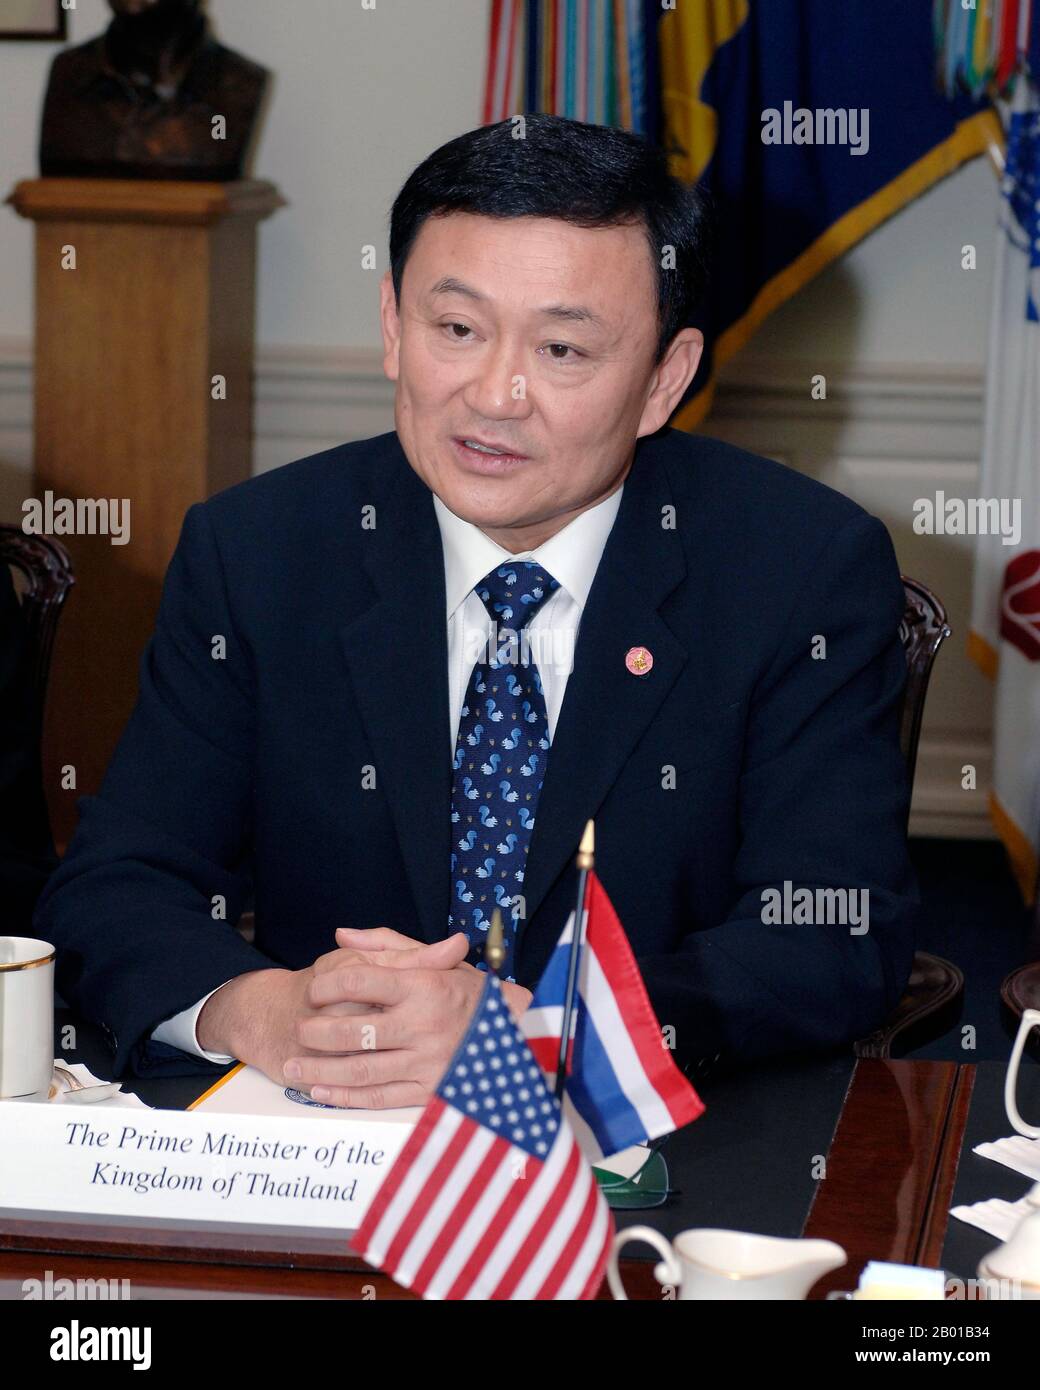 Thailand: Thaksin Shinawatra (26. Juli 1949 - ), Premierminister von Thailand (r. 2001-2006). Foto von Helene C. Stikkel (DoD), 5. Mai 2005. Thaksin Shinawatra ist Politiker und Geschäftsmann und war von 2001 bis 2006 Premierminister von Thailand, als er in einem Staatsstreich abgesetzt wurde, weil er angeblich seine Macht zum persönlichen Vorteil missbraucht hatte. Er gründete den Mobilfunkanbieter Advanced Info Service sowie die Shin Corporation, was ihn zu einem der reichsten Menschen in Thailand machte. Thaksin gewann 2001 einen erdrutschenden Wahlsieg und wurde damit der erste demokratisch gewählte Premierminister, der eine volle Amtszeit ausmachte. Stockfoto